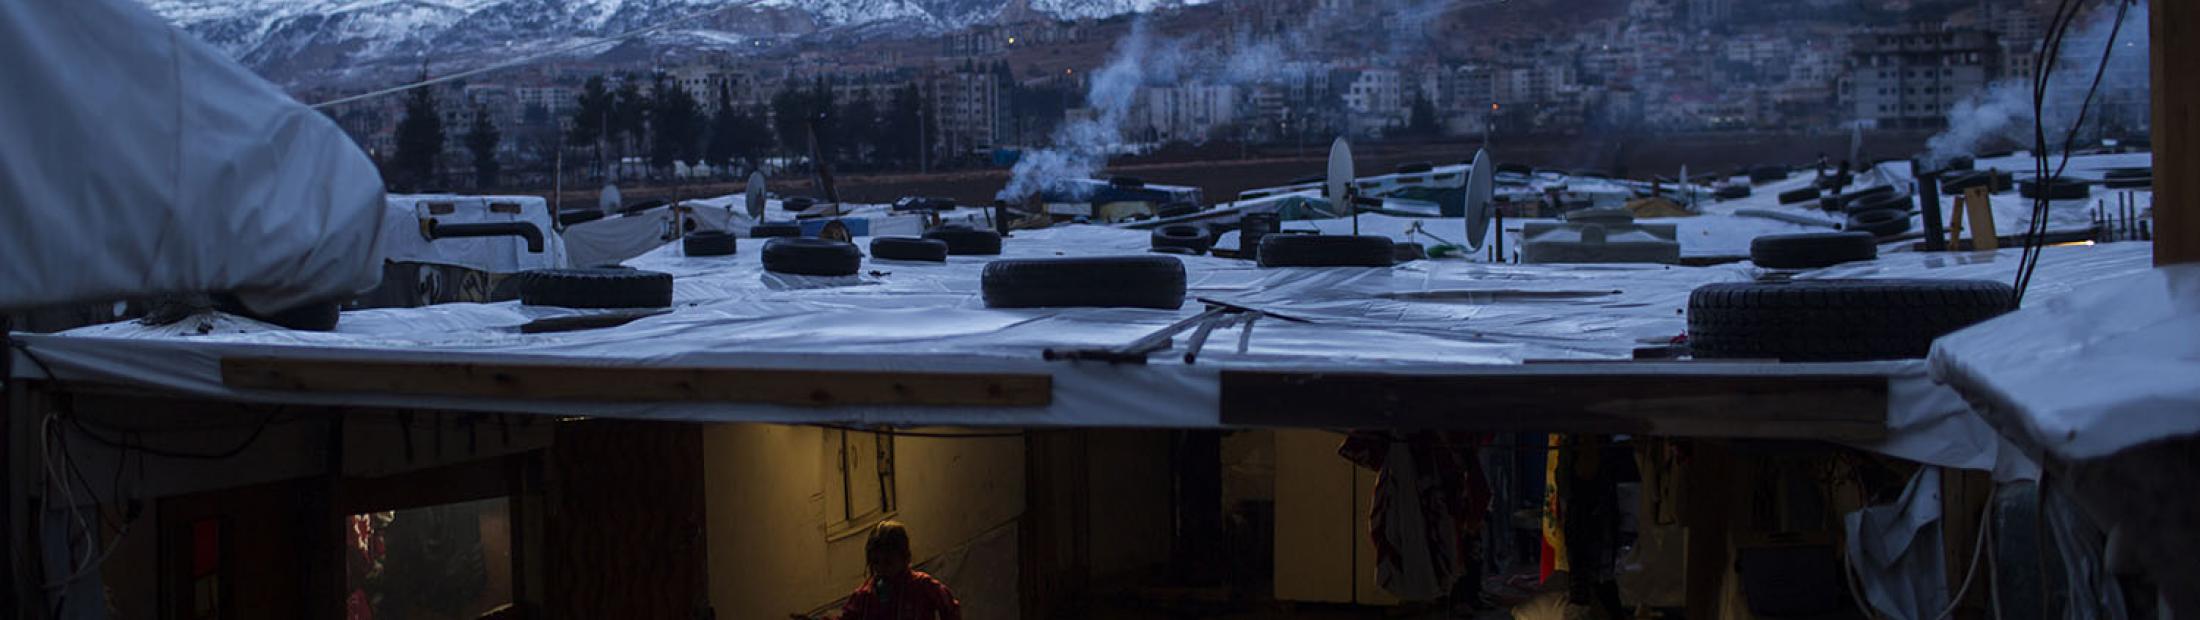 La ola de frío afecta a refugiados y migrantes en la ruta de los Balcanes